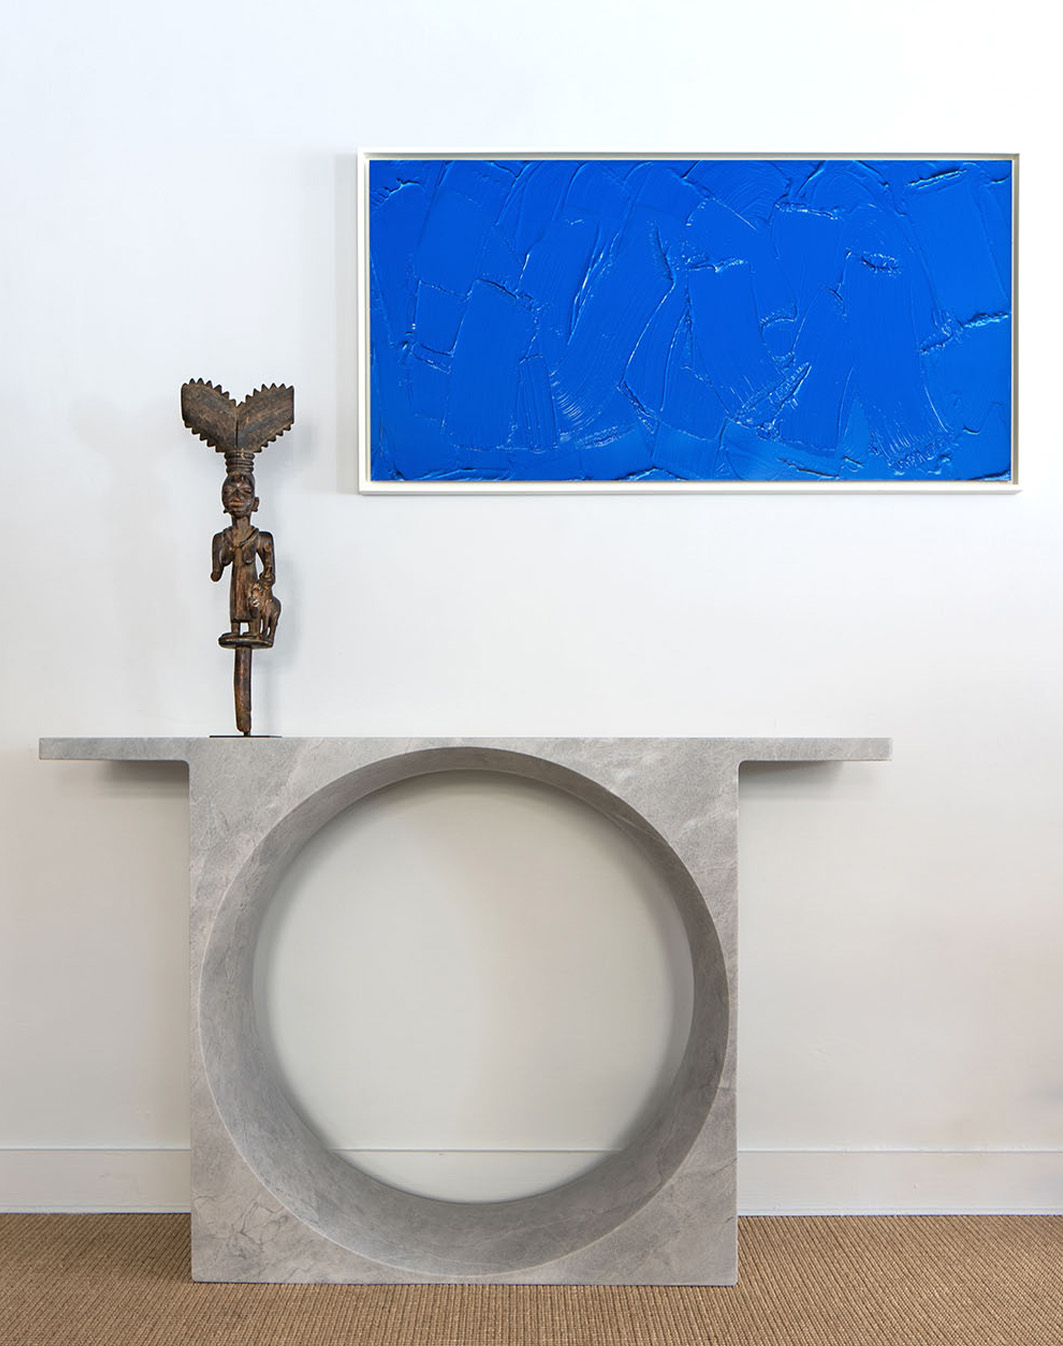 Gino Sarfatti - Lucas Ratton x kamel mennour x Galerie kreo @Saint-Tropez